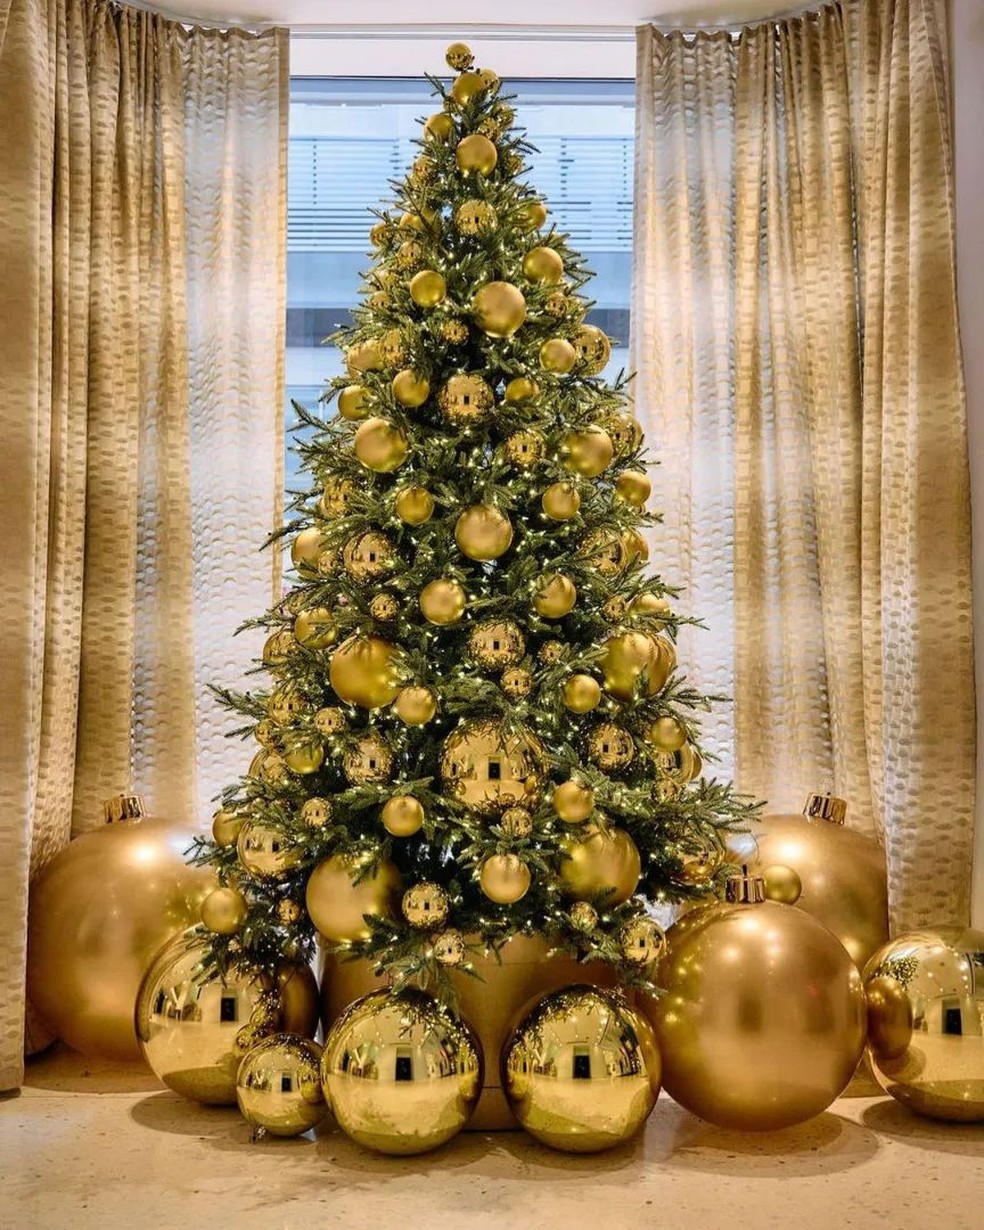 Bolas de Natal de variados tamanhps fazem parte da decoração — Foto: Reprodução/Instagram